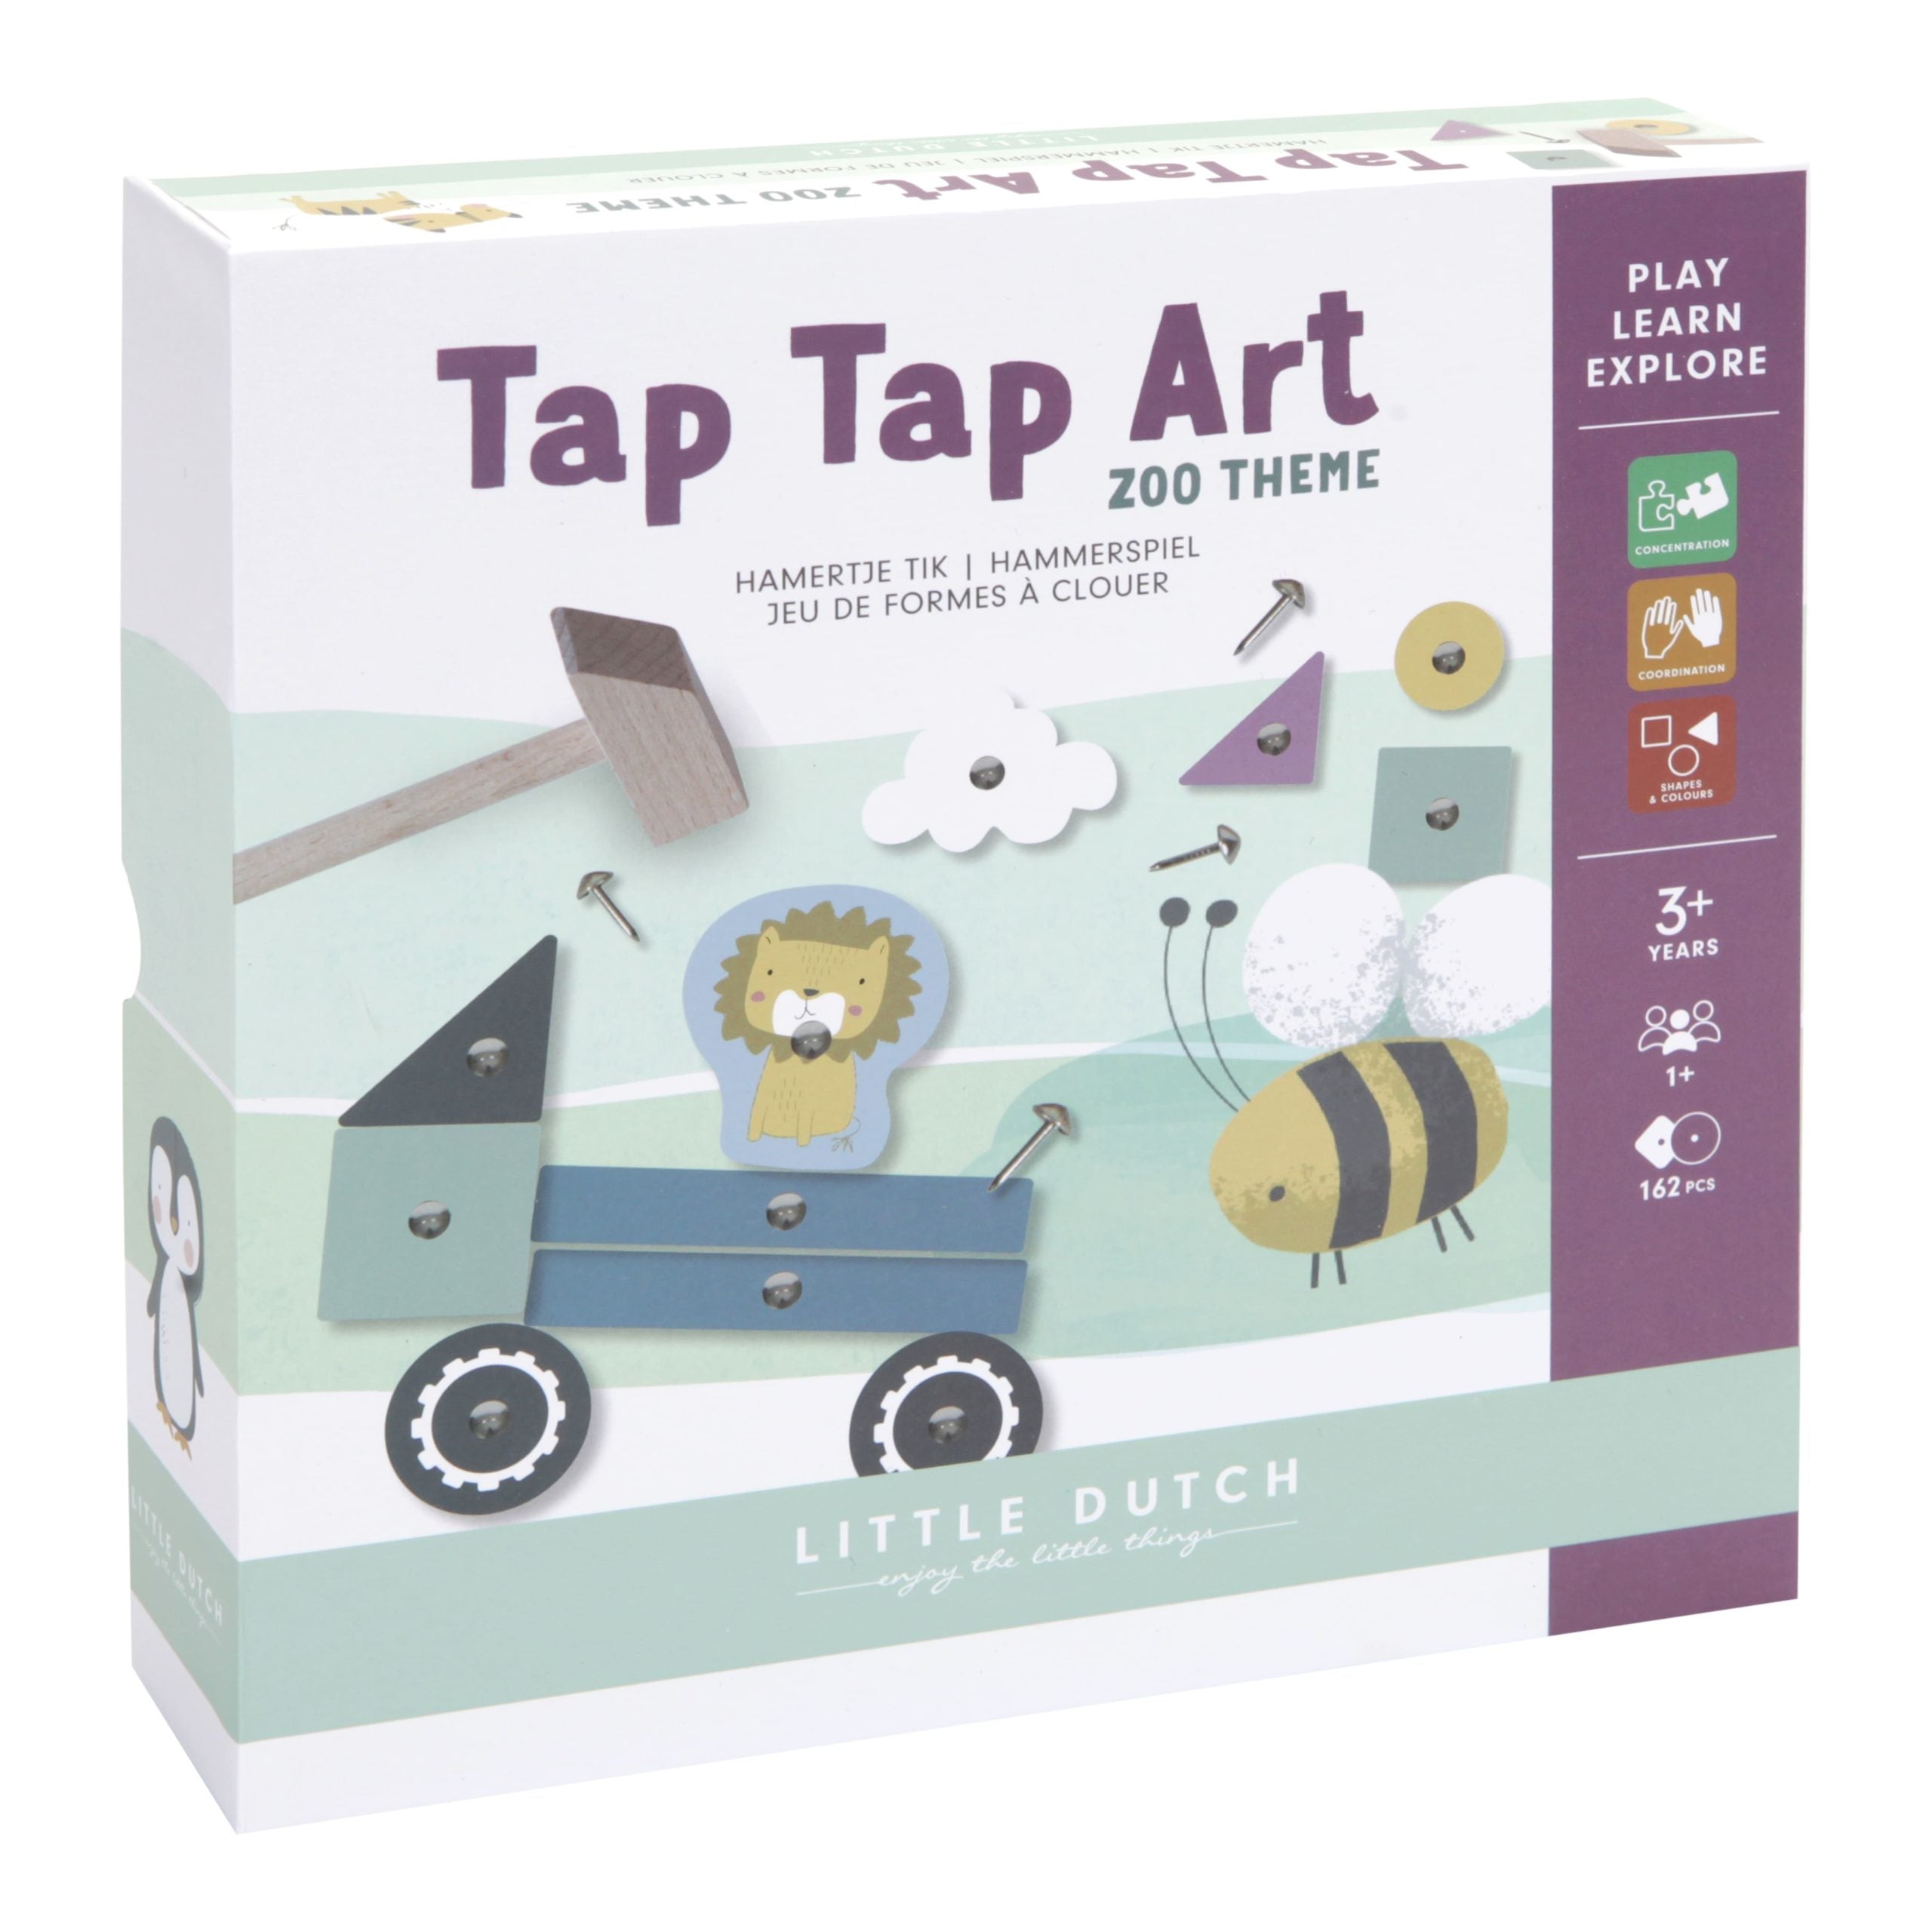 tap-tap-art-game-1